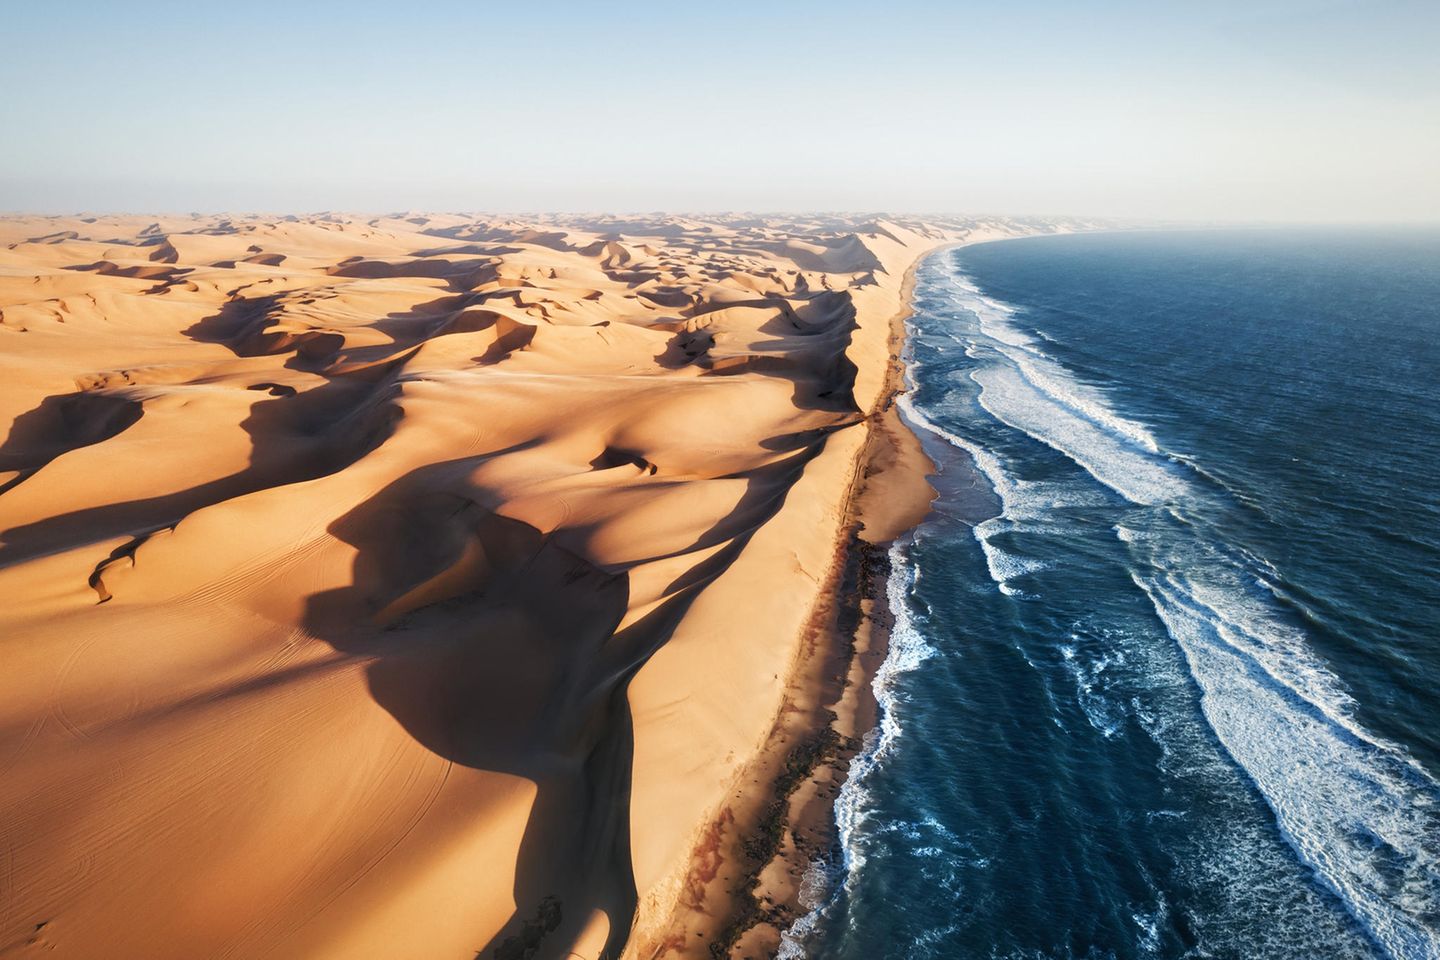 Im Norden Namibias trifft die Namib-Wüste auf den Atlantischen Ozean. Ein lebensfeindlicher und doch überaus faszinierender Ort, der trotz seiner Extreme eine vielfältige Tierwelt beherbergt